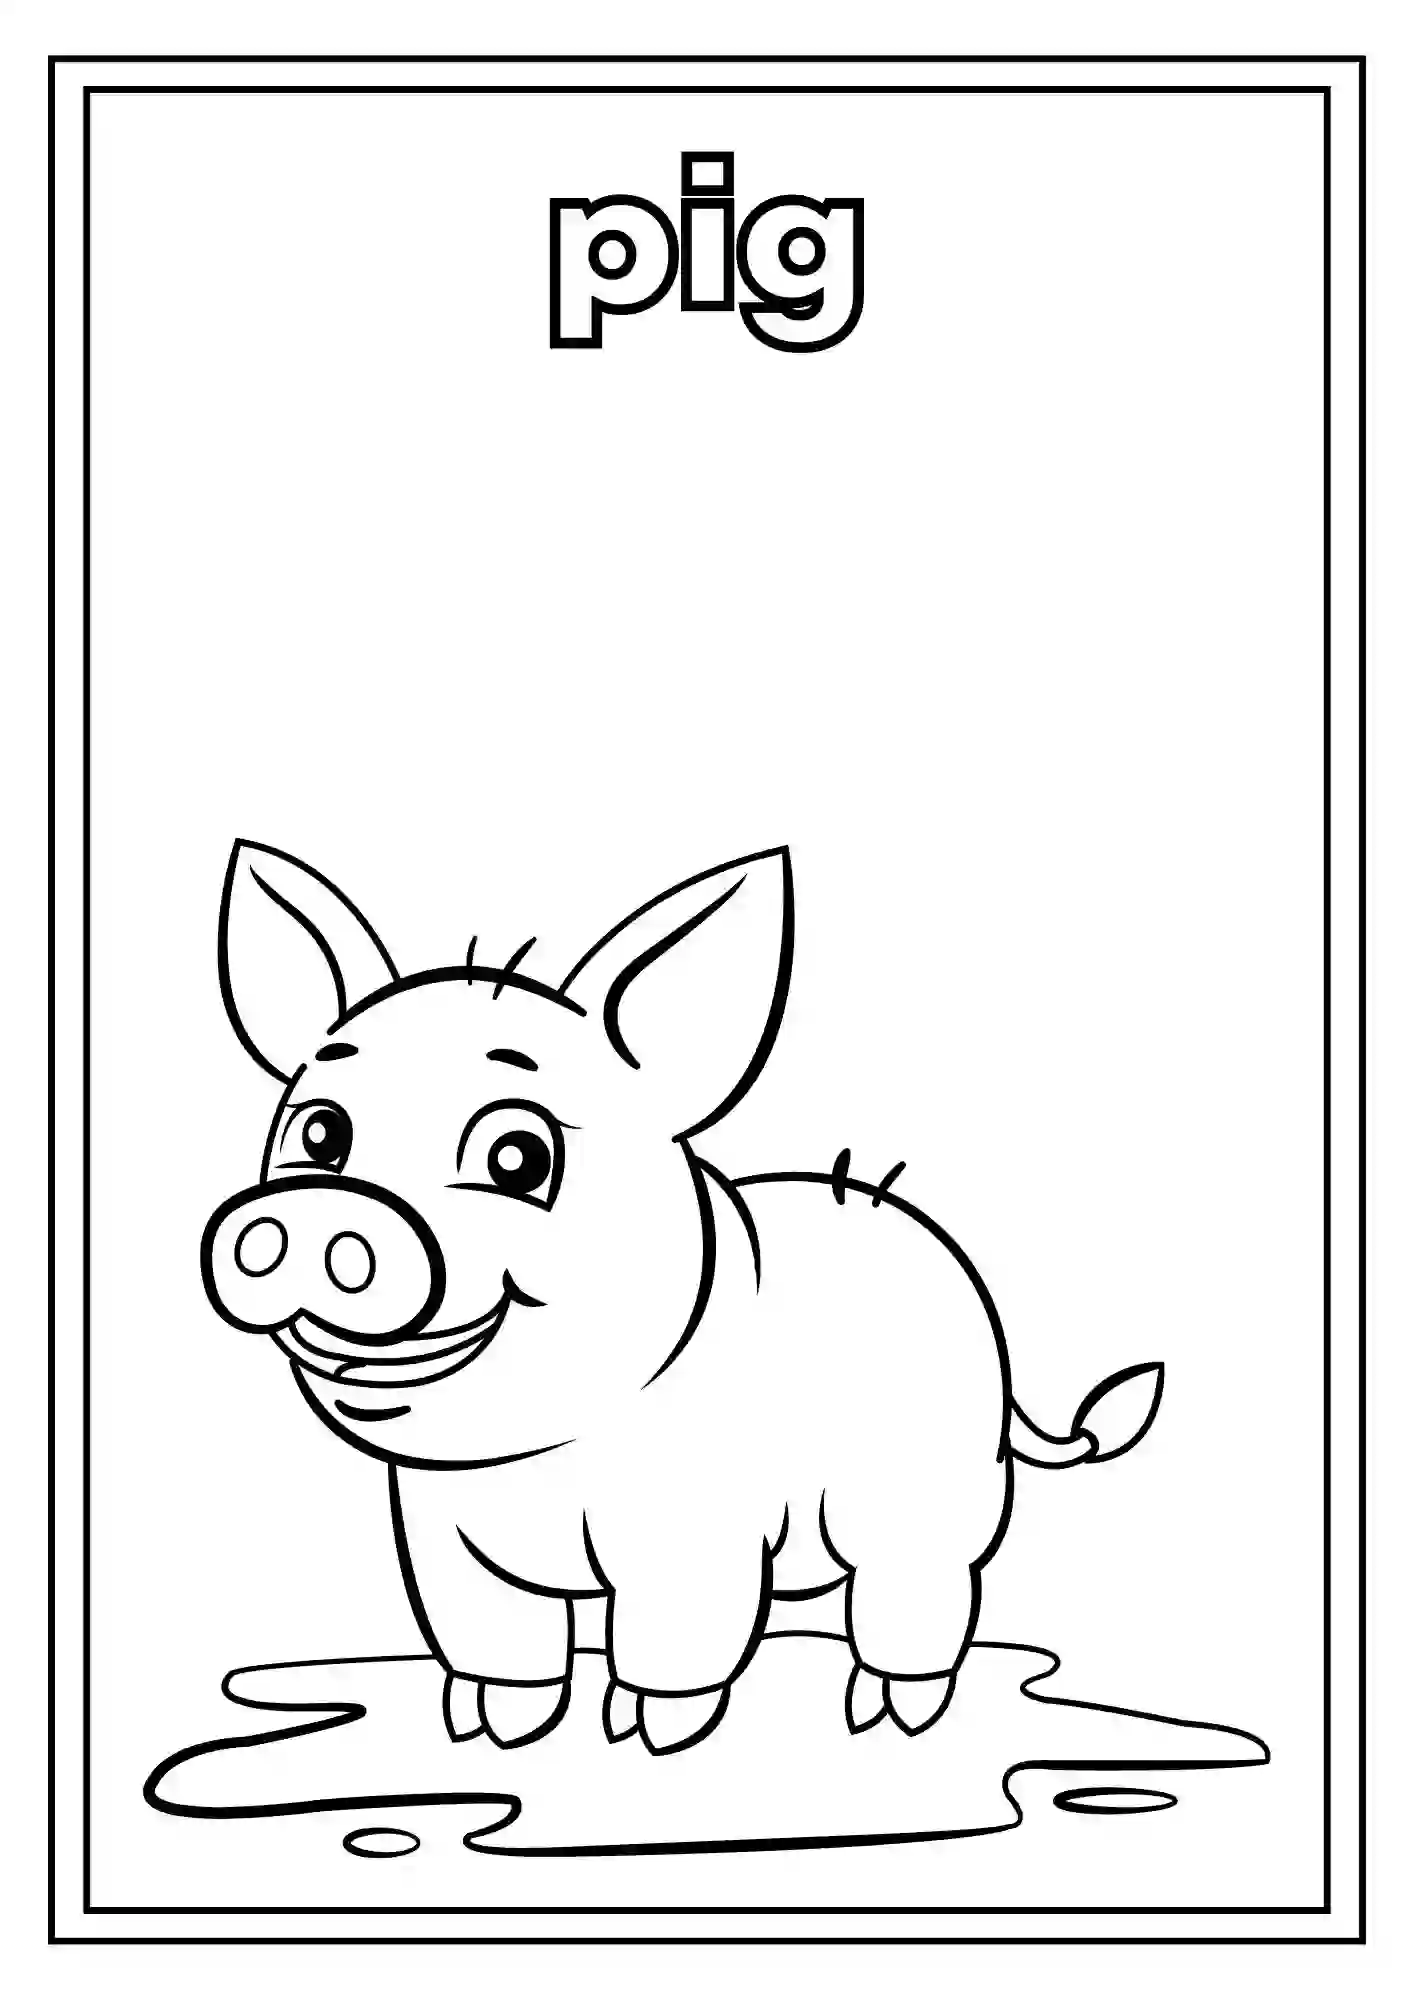 Animal Coloring Worksheets for Kindergarten Part 2 (PIG)